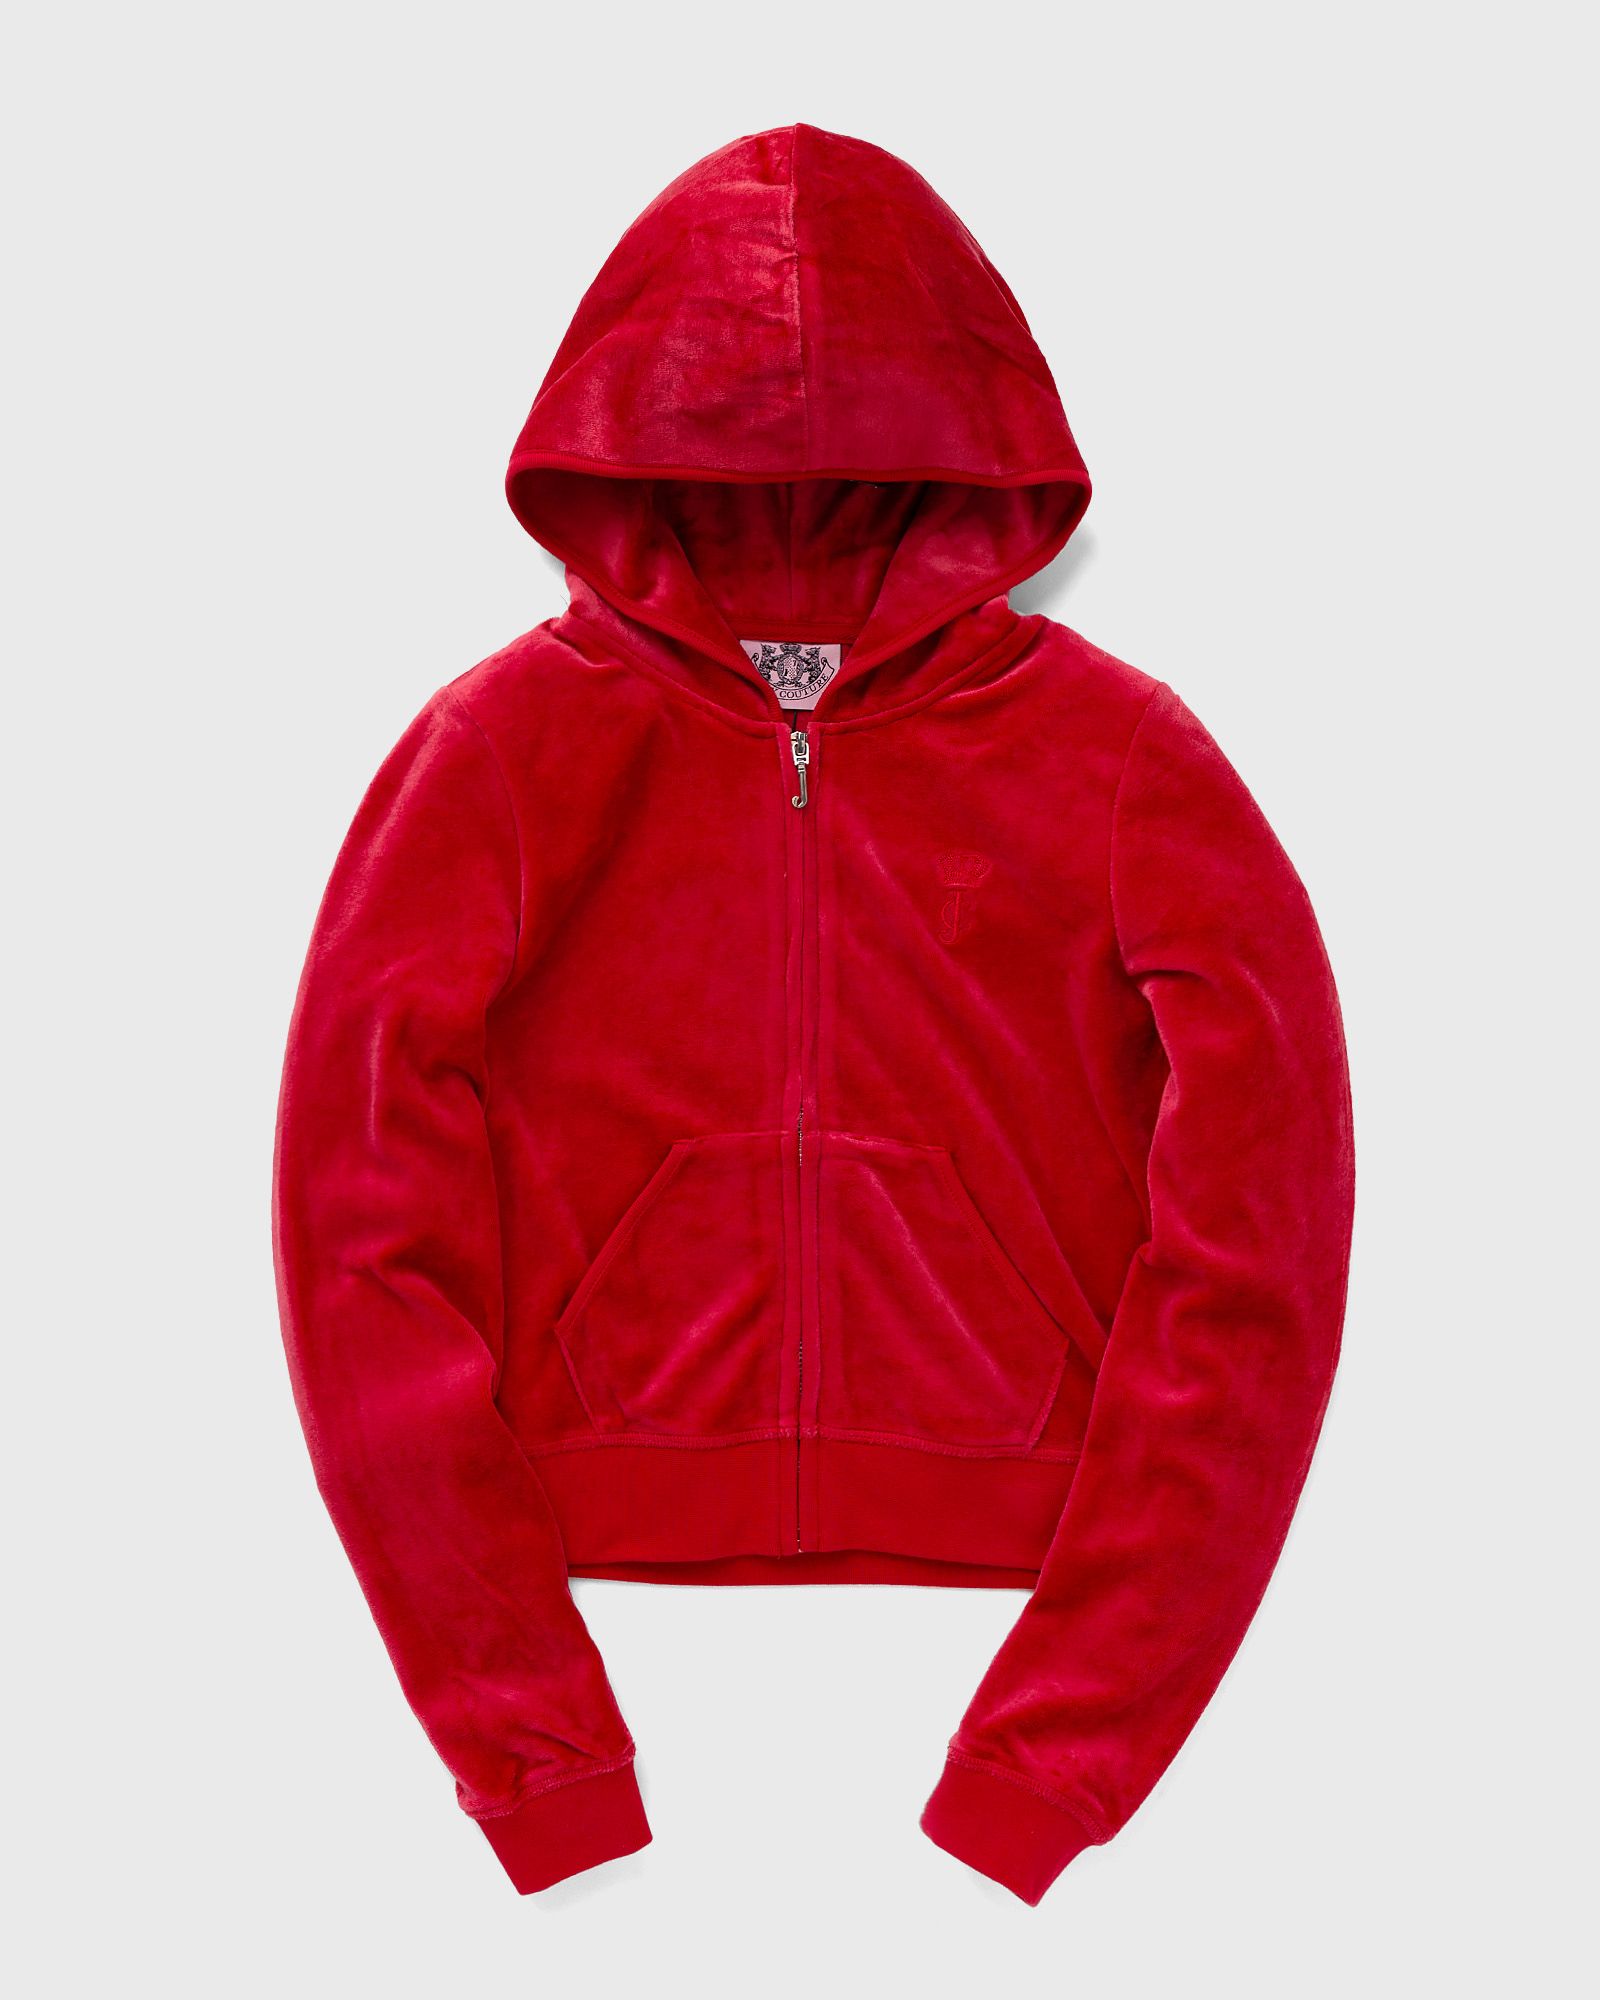 Juicy Couture - wmns robyn hoodie women hoodies|zippers red in größe:m